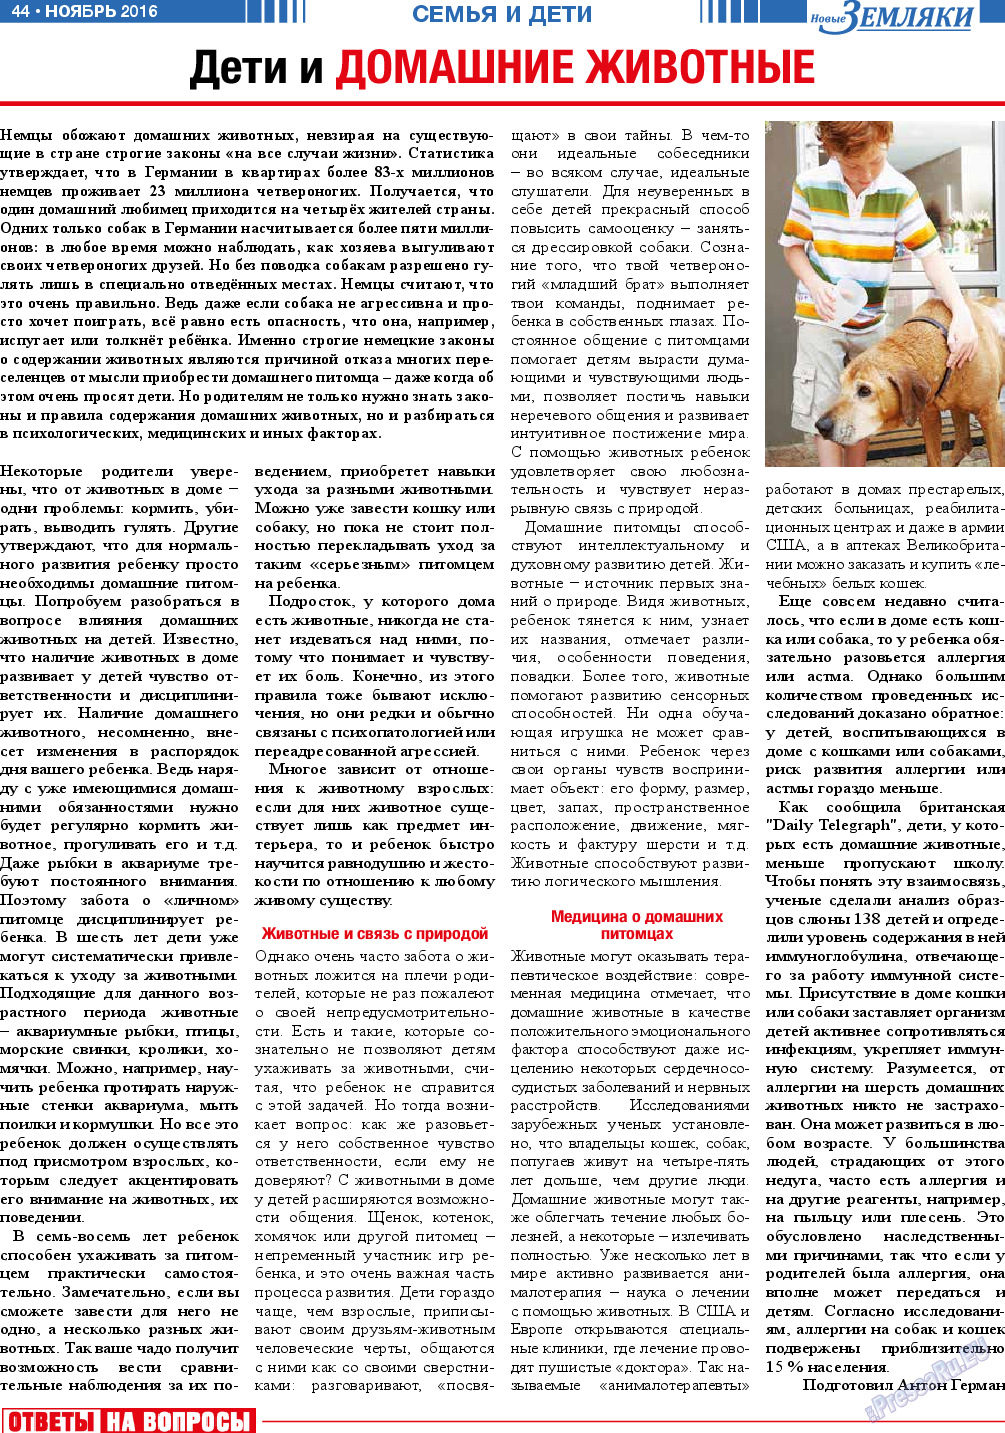 Новые Земляки, газета. 2016 №11 стр.44